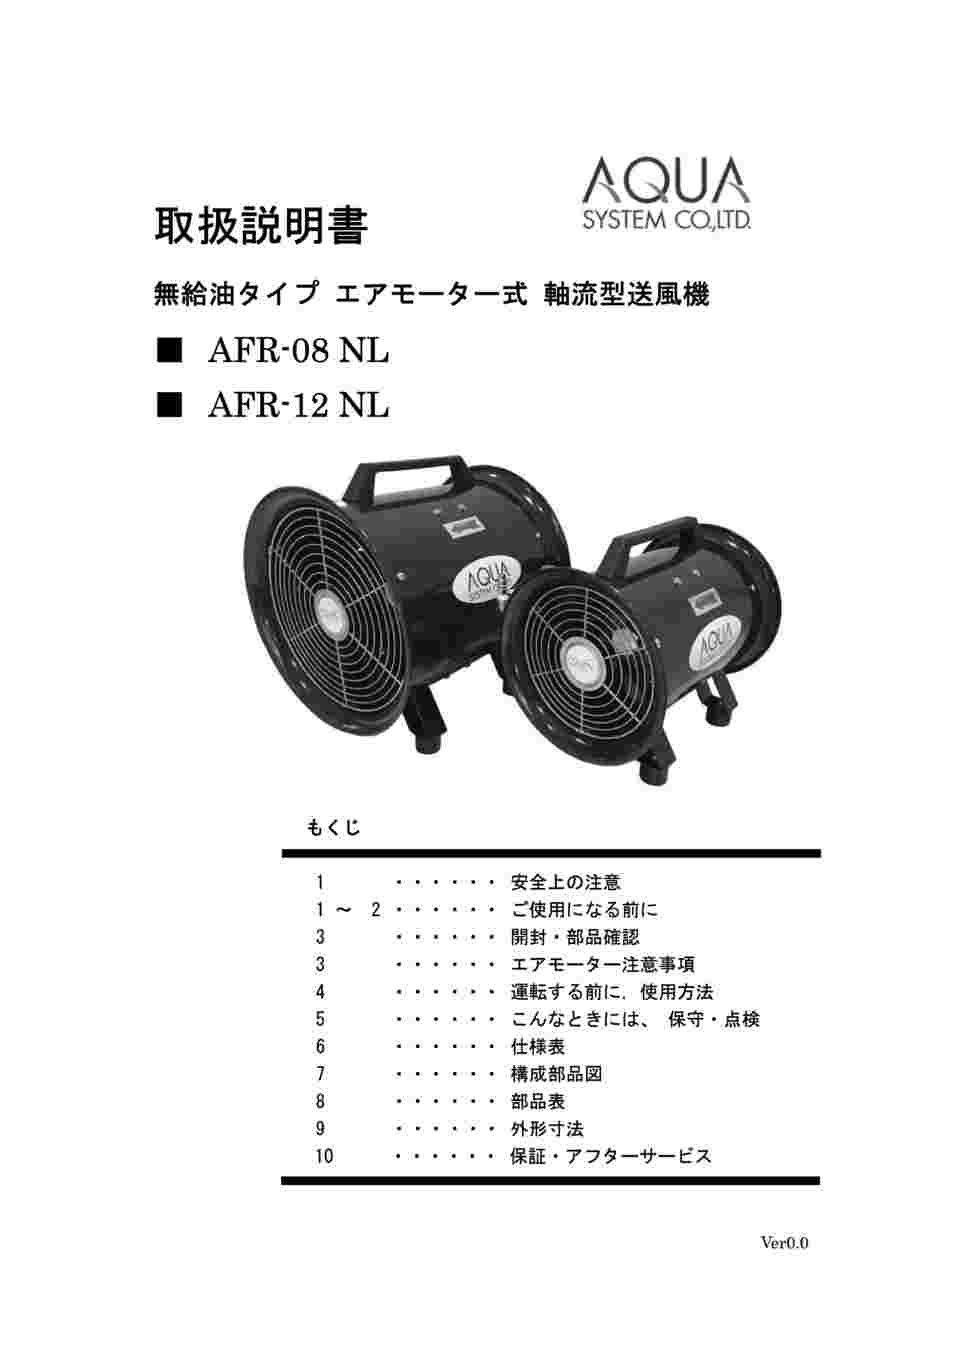 64-8891-28 無給油エアモーター式送風機（軸流型） AFR-08NL 【AXEL